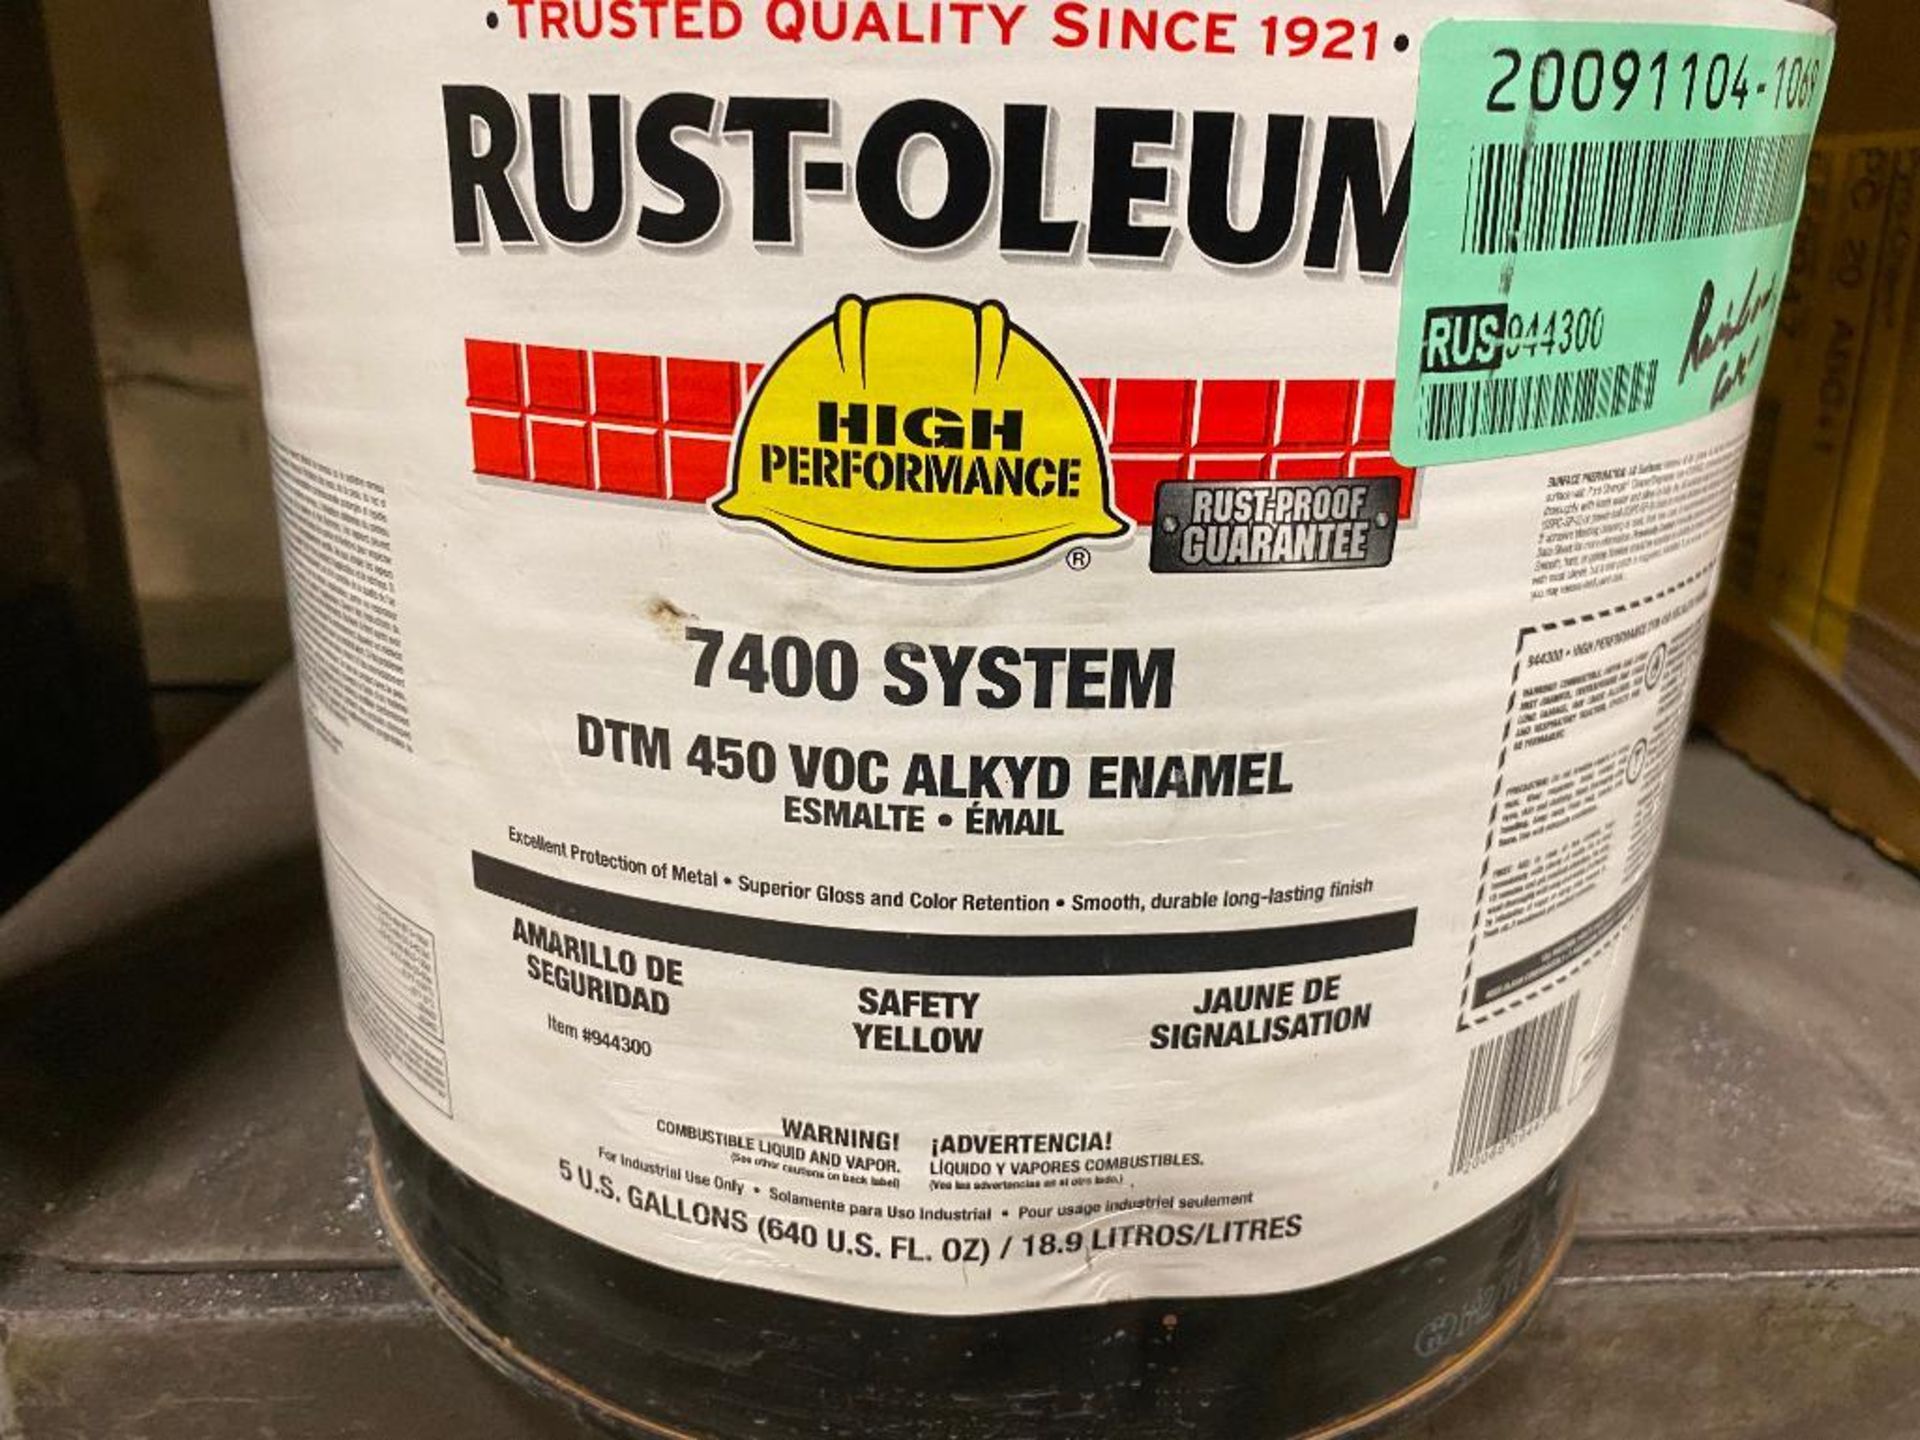 Rustoleum 7400 System Paint 18.9L - Image 2 of 2